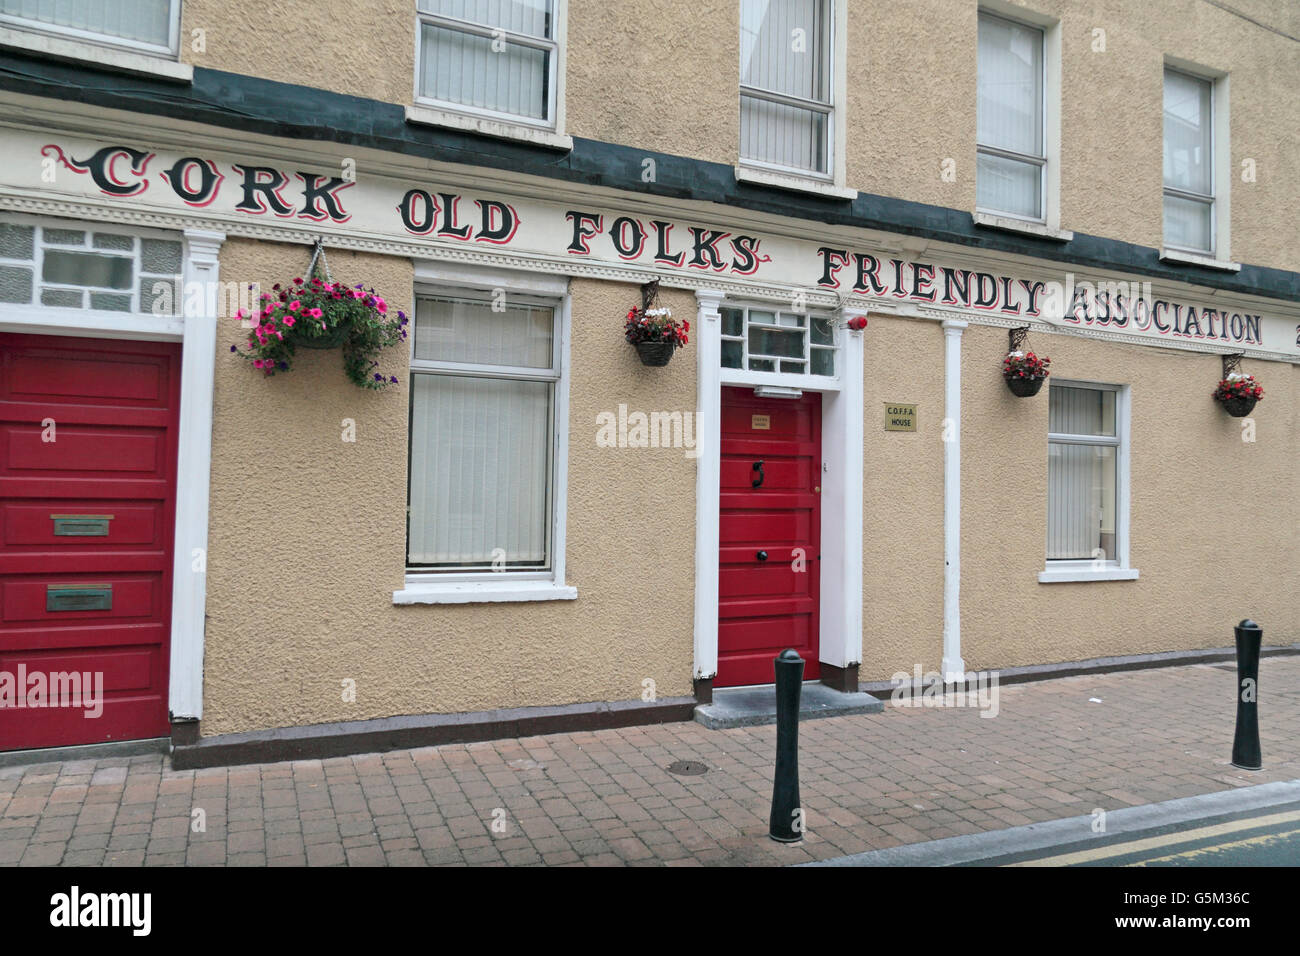 Le liège Vieux gens Association Amicale d'entrée dans la ville de Cork, County Cork, Irlande (Eire). Banque D'Images